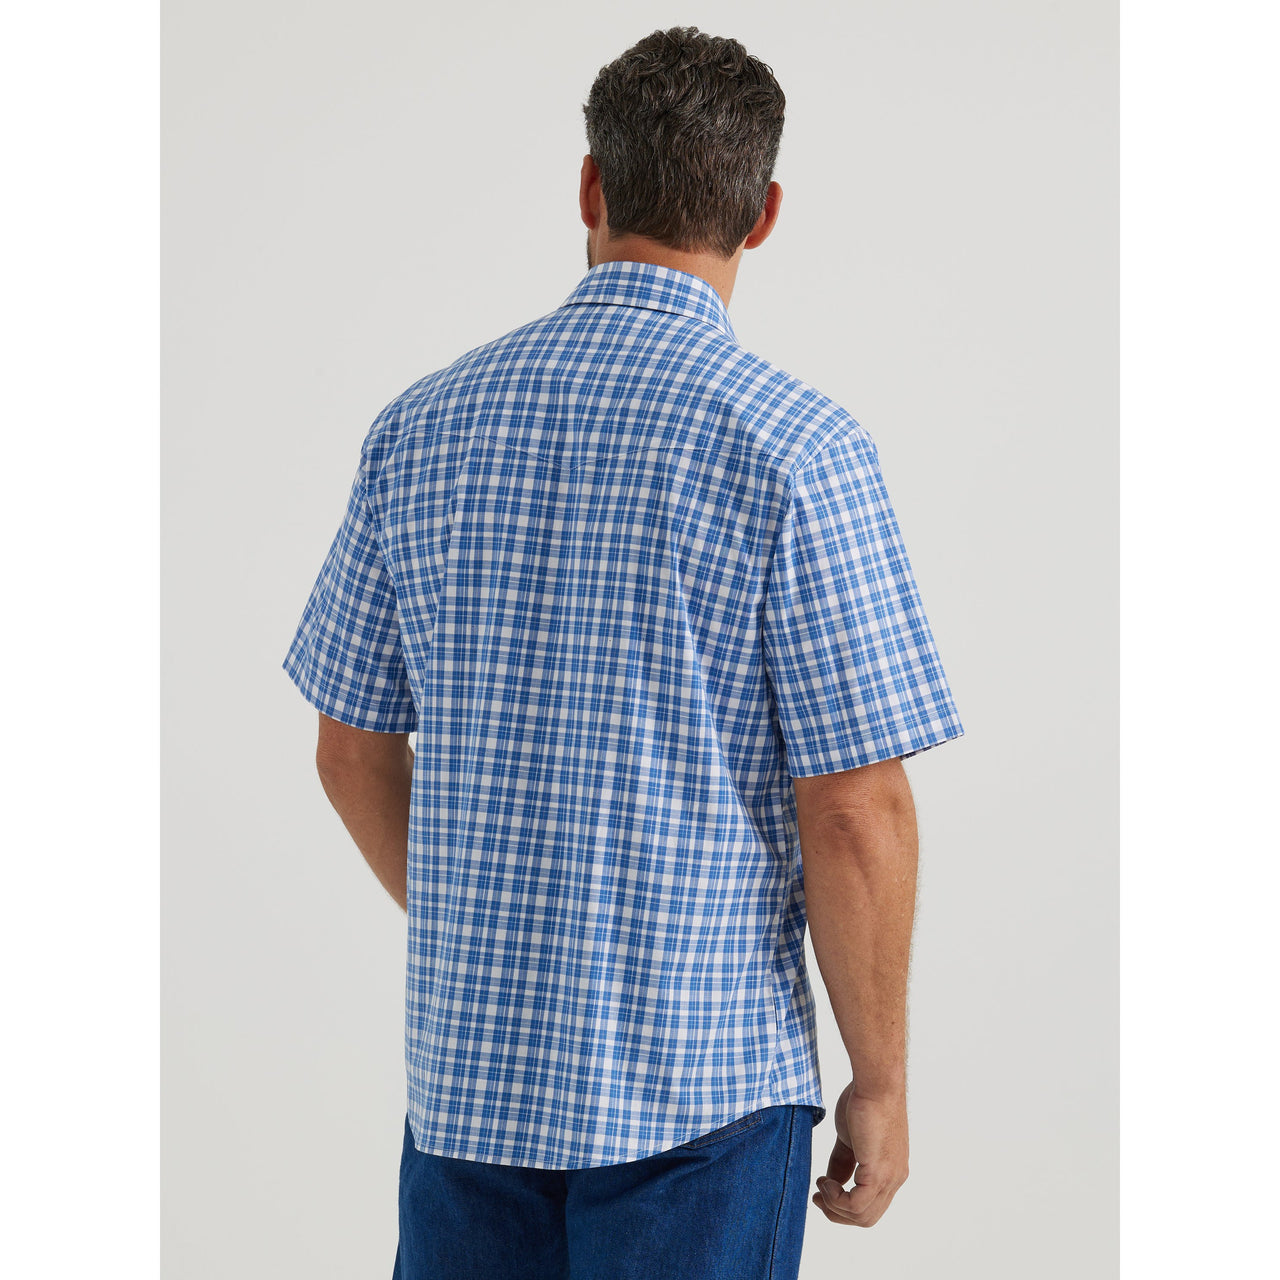 Wrangler Men's Wrinkle Resist Short Sleeve Plaid Shirt - Blue